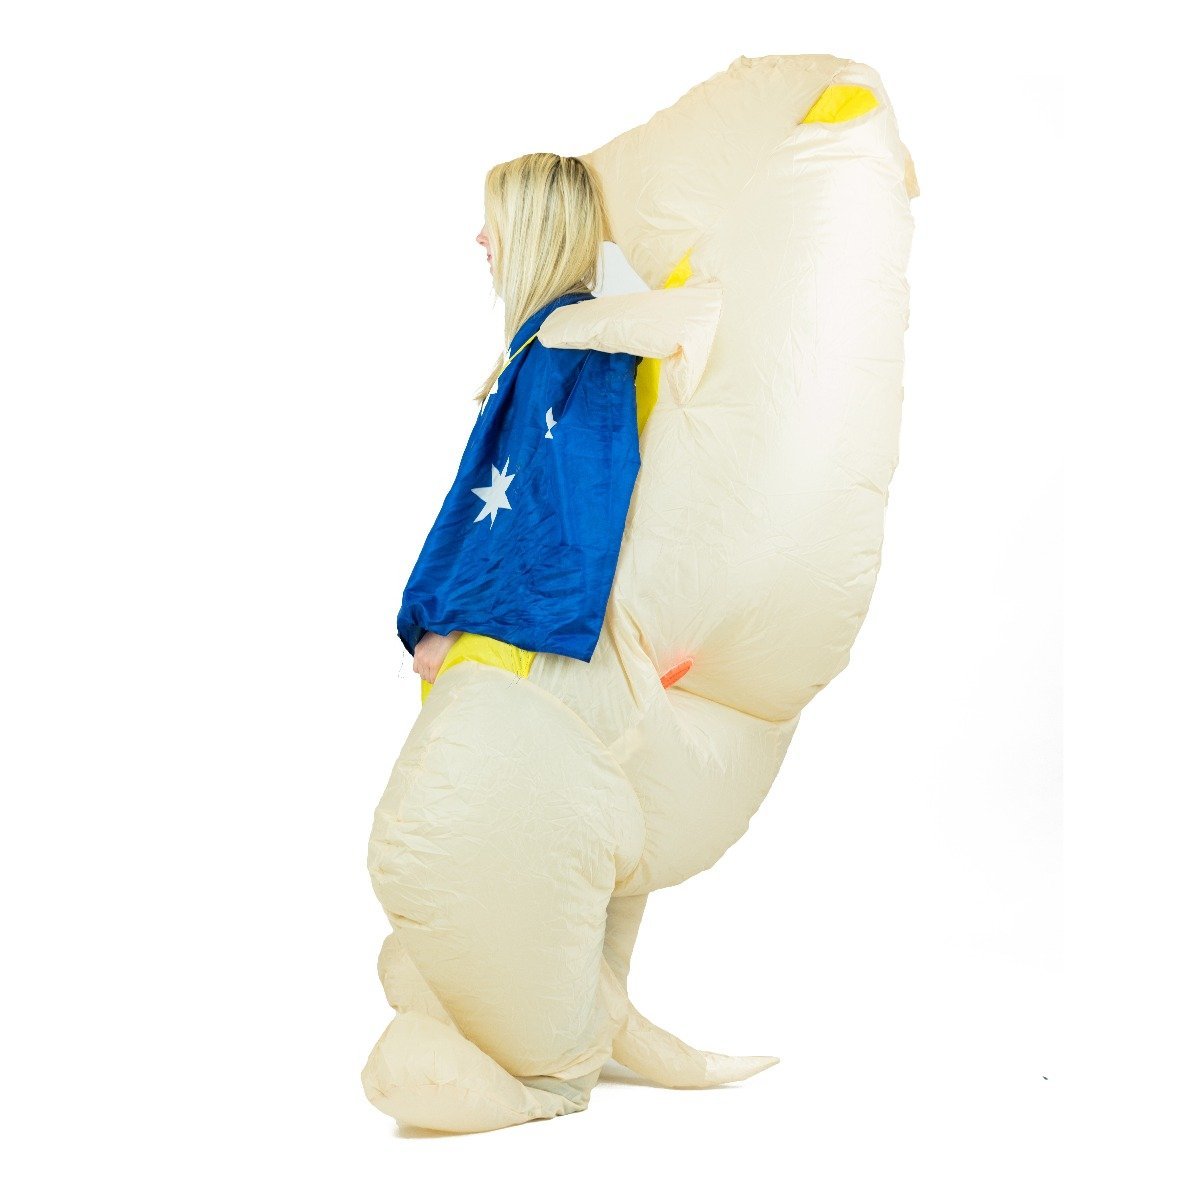 Bodysocks - Inflatable Kangaroo Costume